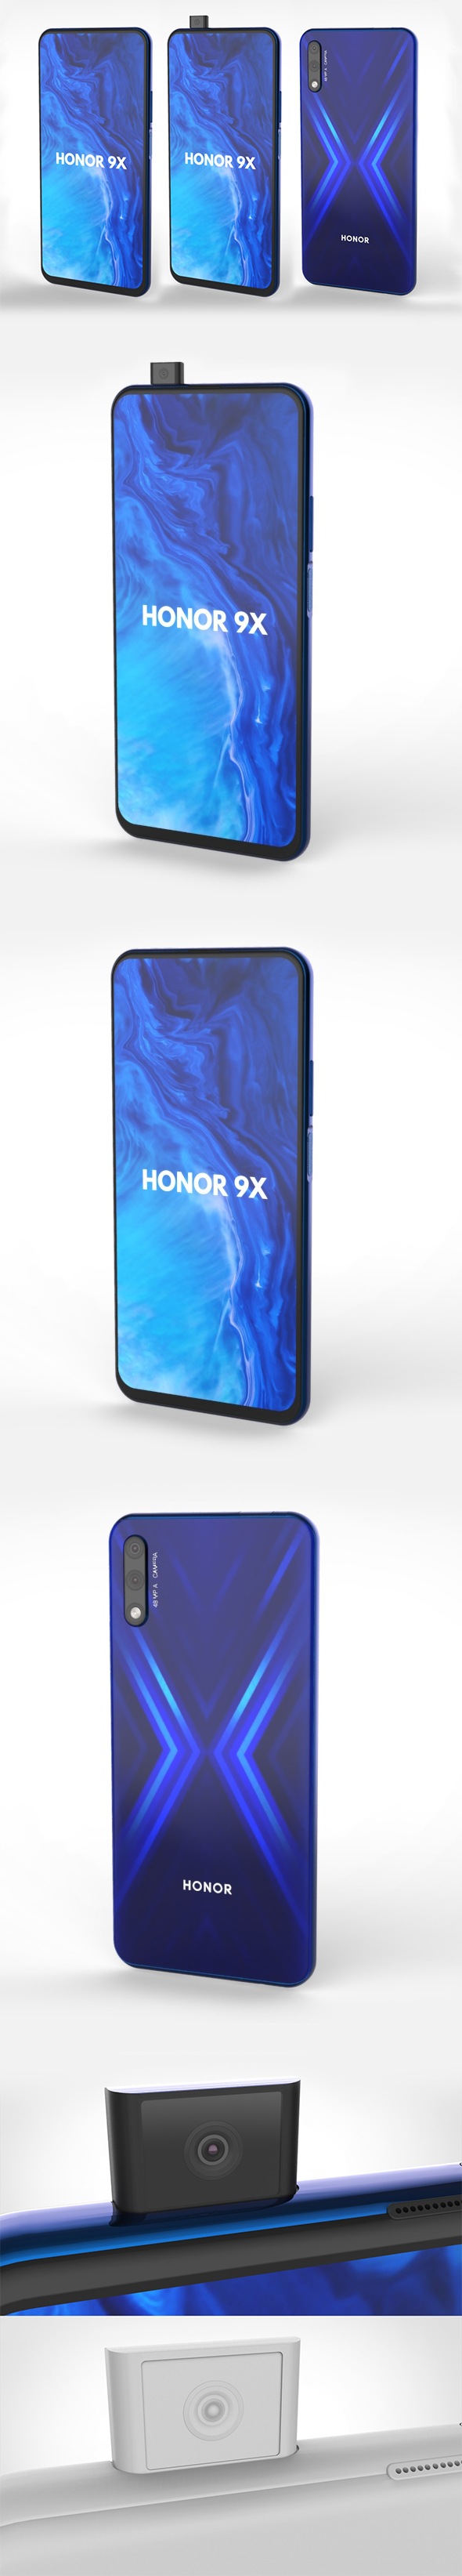 Huawei Honor 9X - 3Docean 24986496